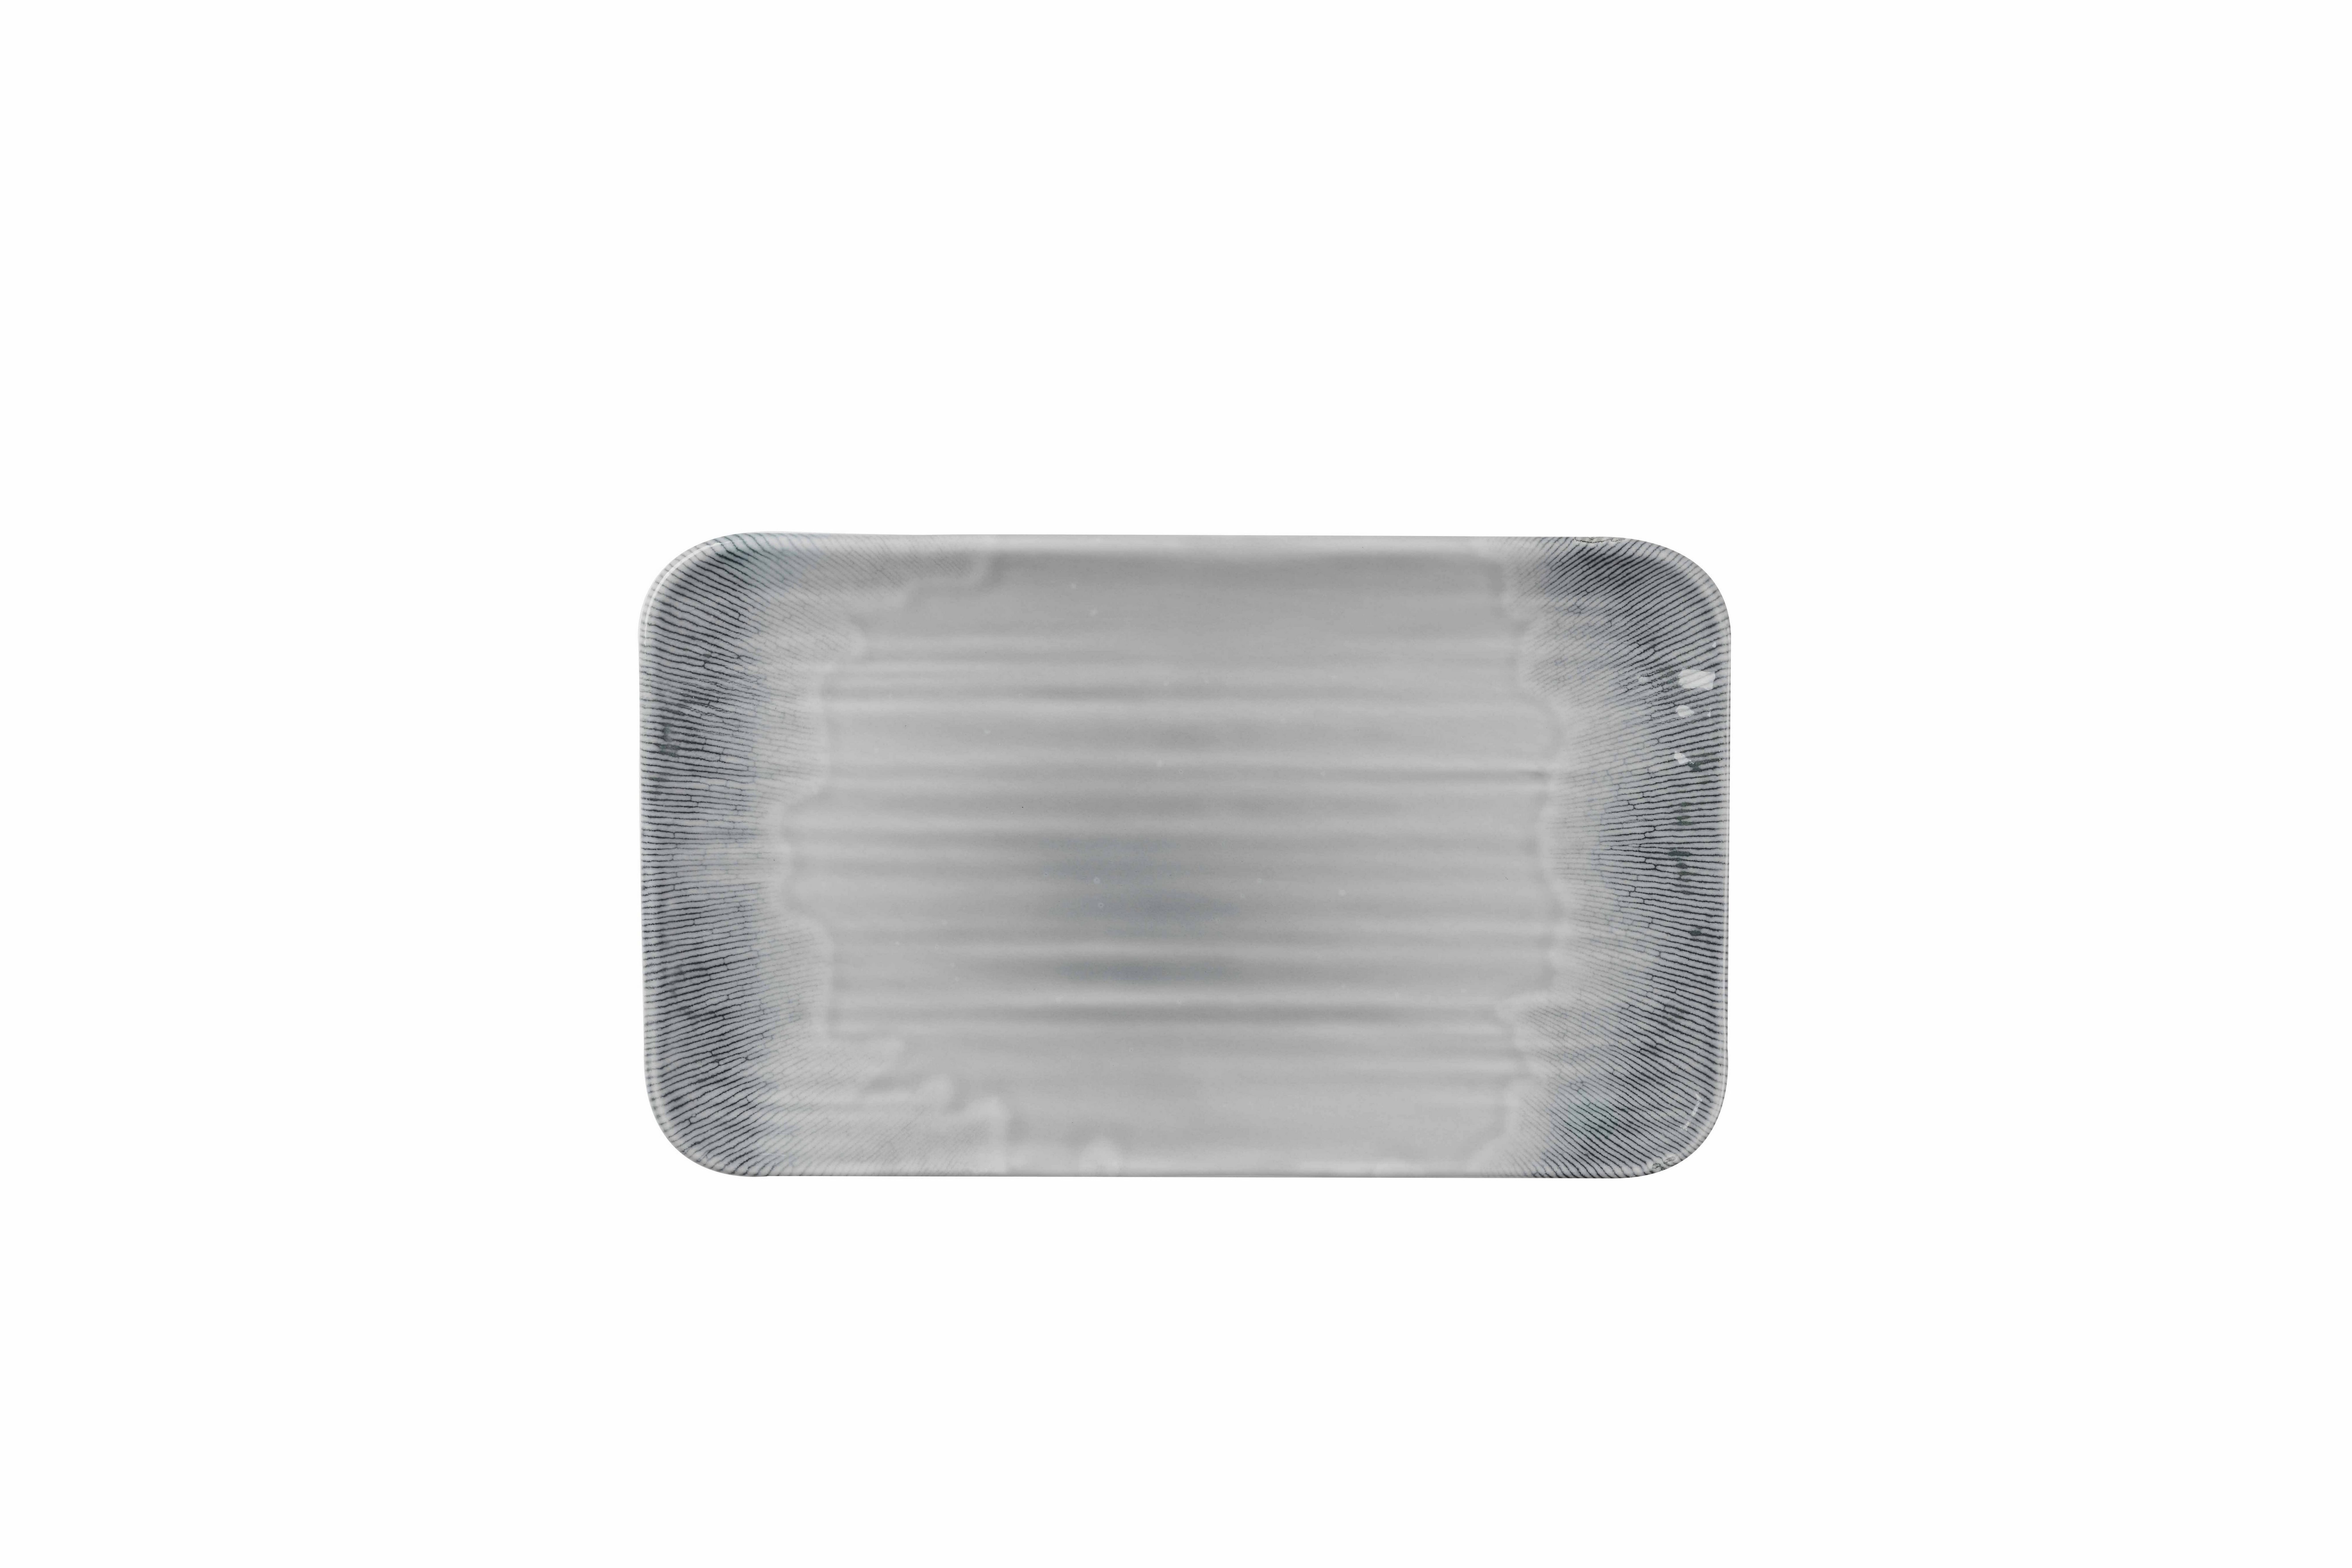 Grau, Dudson Dudson Feinstes Organische Flux Platte, Servierplatte Harvest Porzellan Grey Rechteckige 27x16cm,